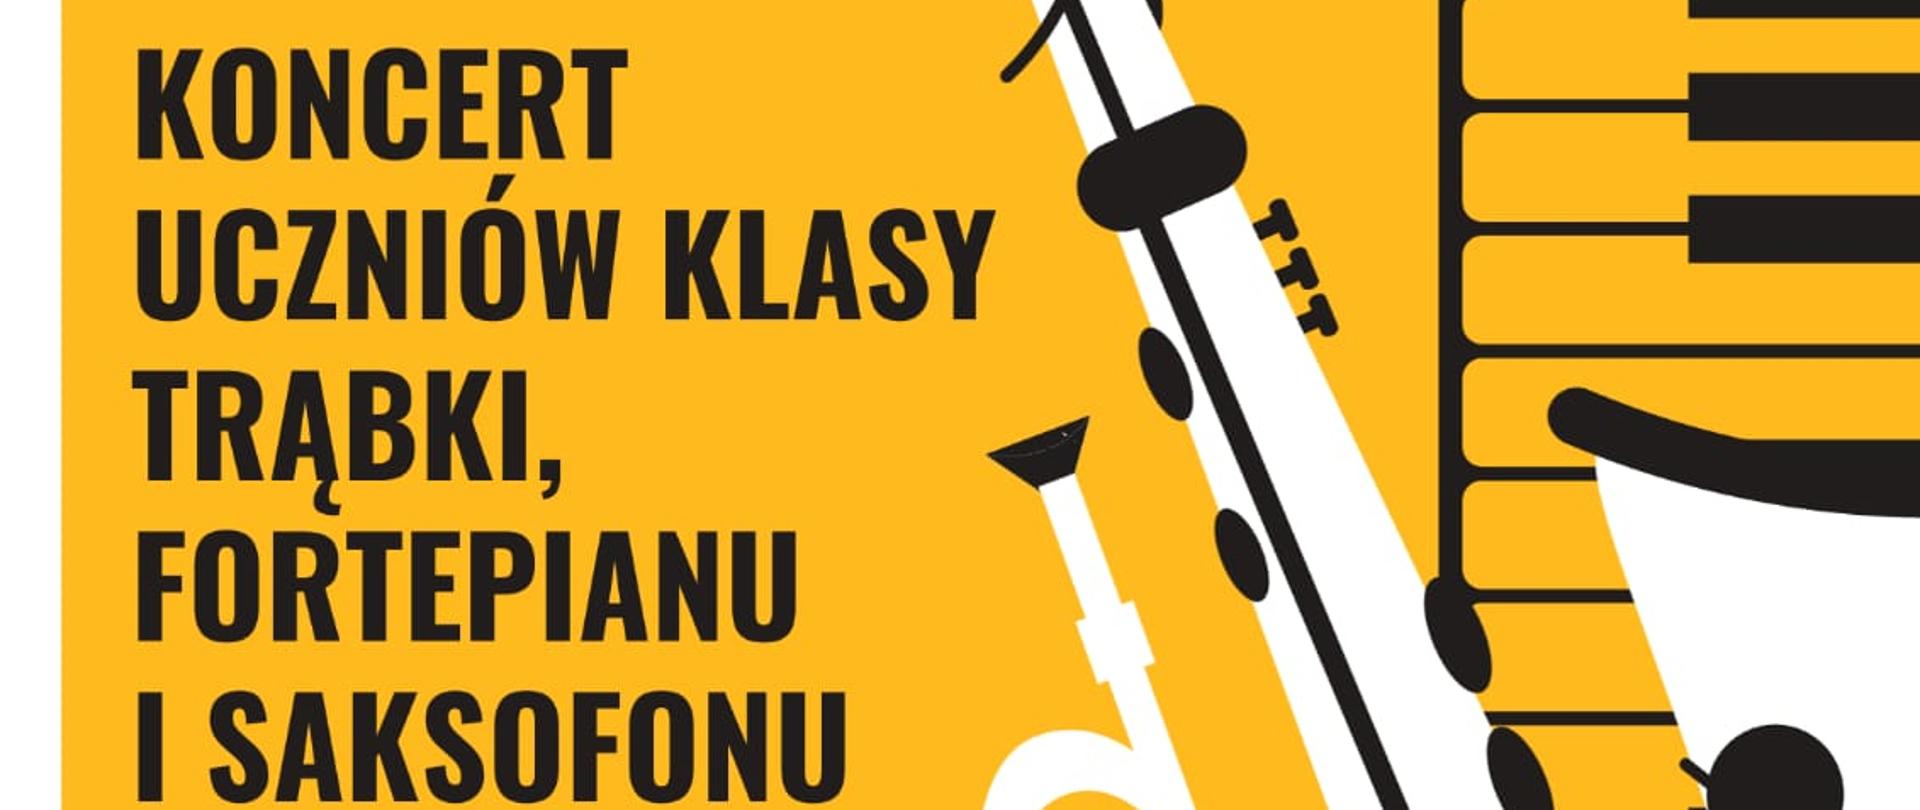 Zdjęcie przedstawia plakat promocyjny zapraszający na "Koncert uczniów klasy trąbki, fortepianu i saksofonu 27 listopada 2023"